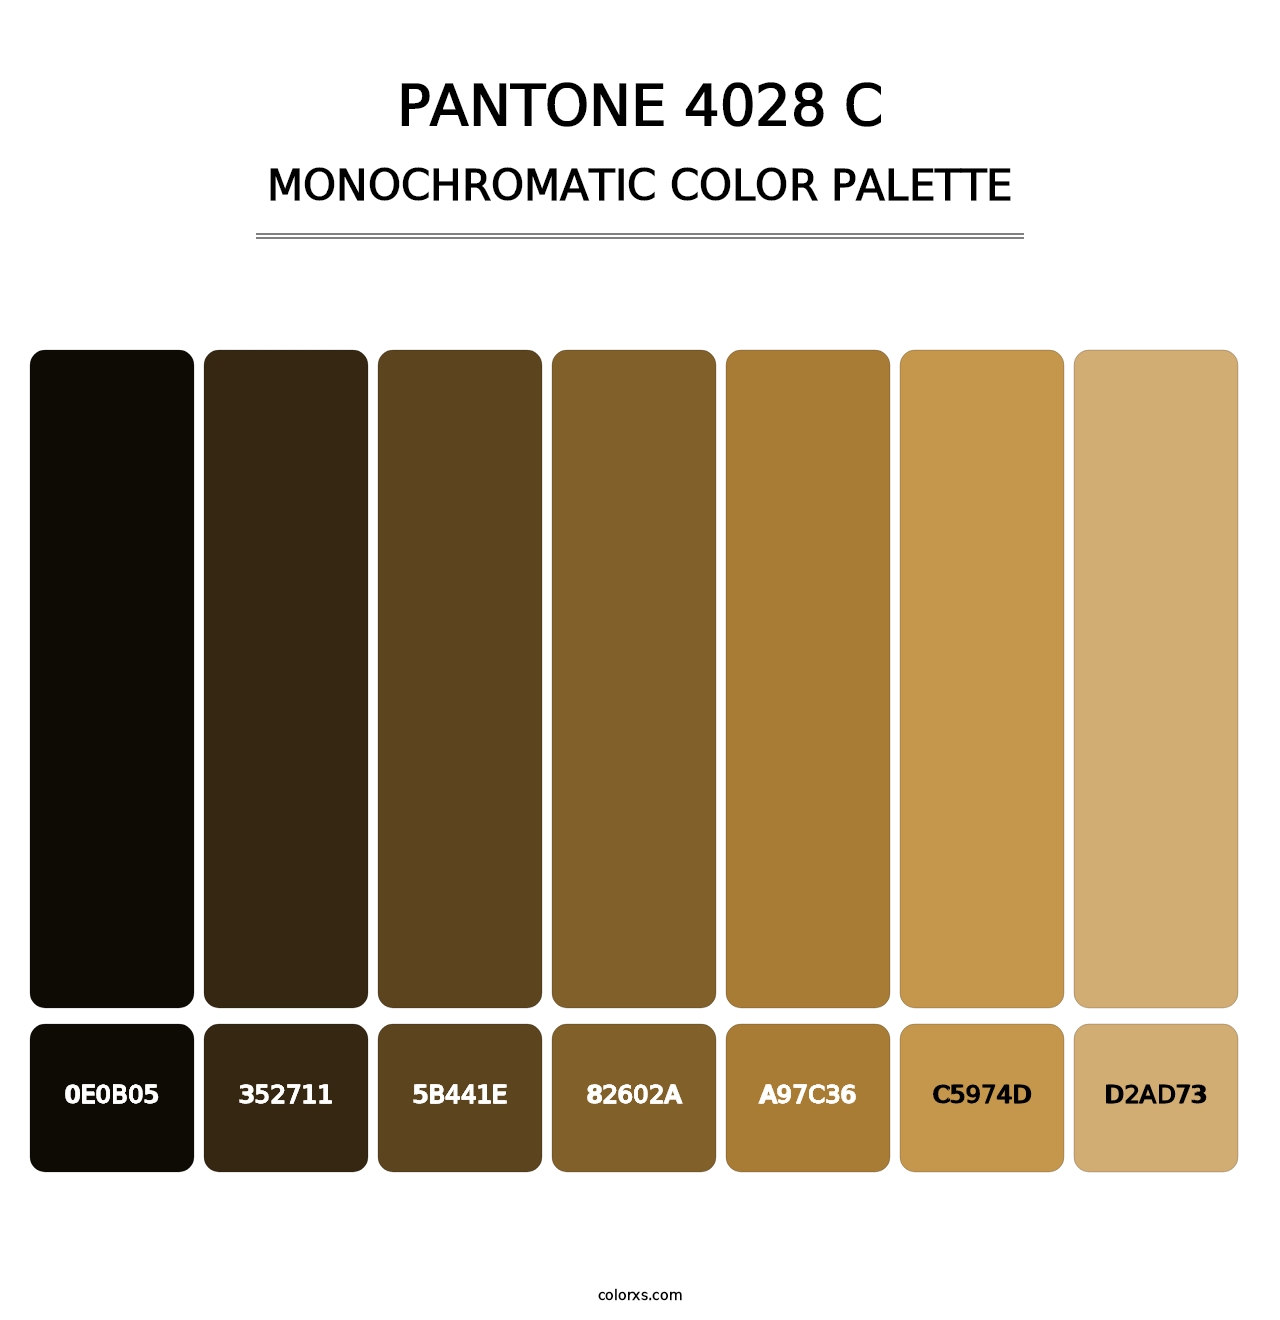 PANTONE 4028 C - Monochromatic Color Palette